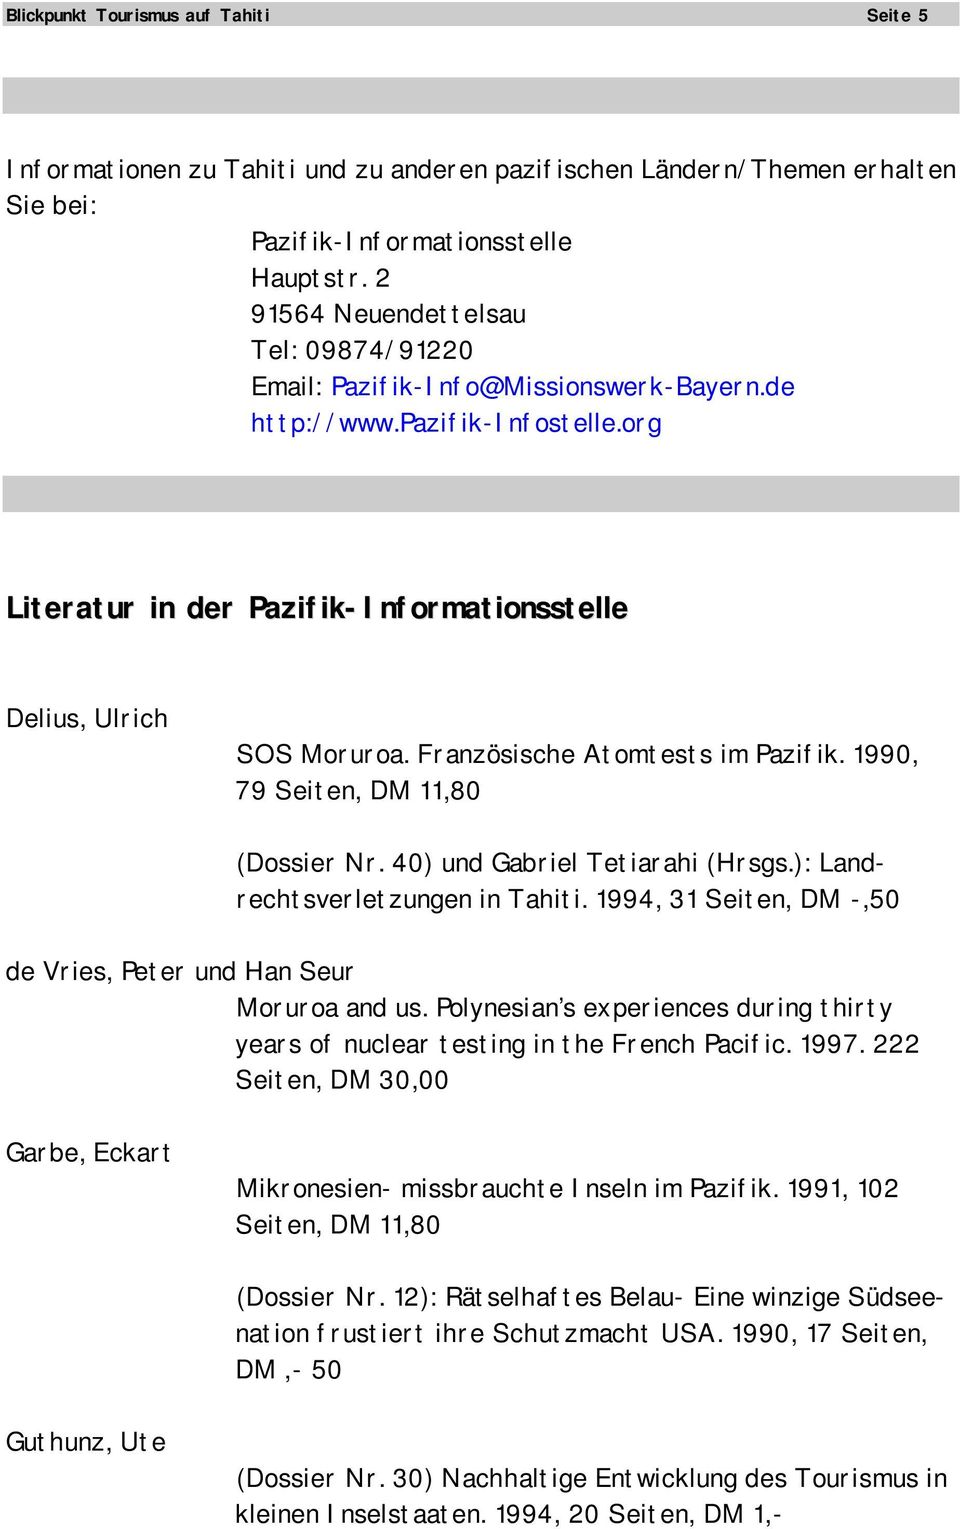 Französische Atomtests im Pazifik. 1990, 79 Seiten, DM 11,80 (Dossier Nr. 40) und Gabriel Tetiarahi (Hrsgs.): Landrechtsverletzungen in Tahiti.